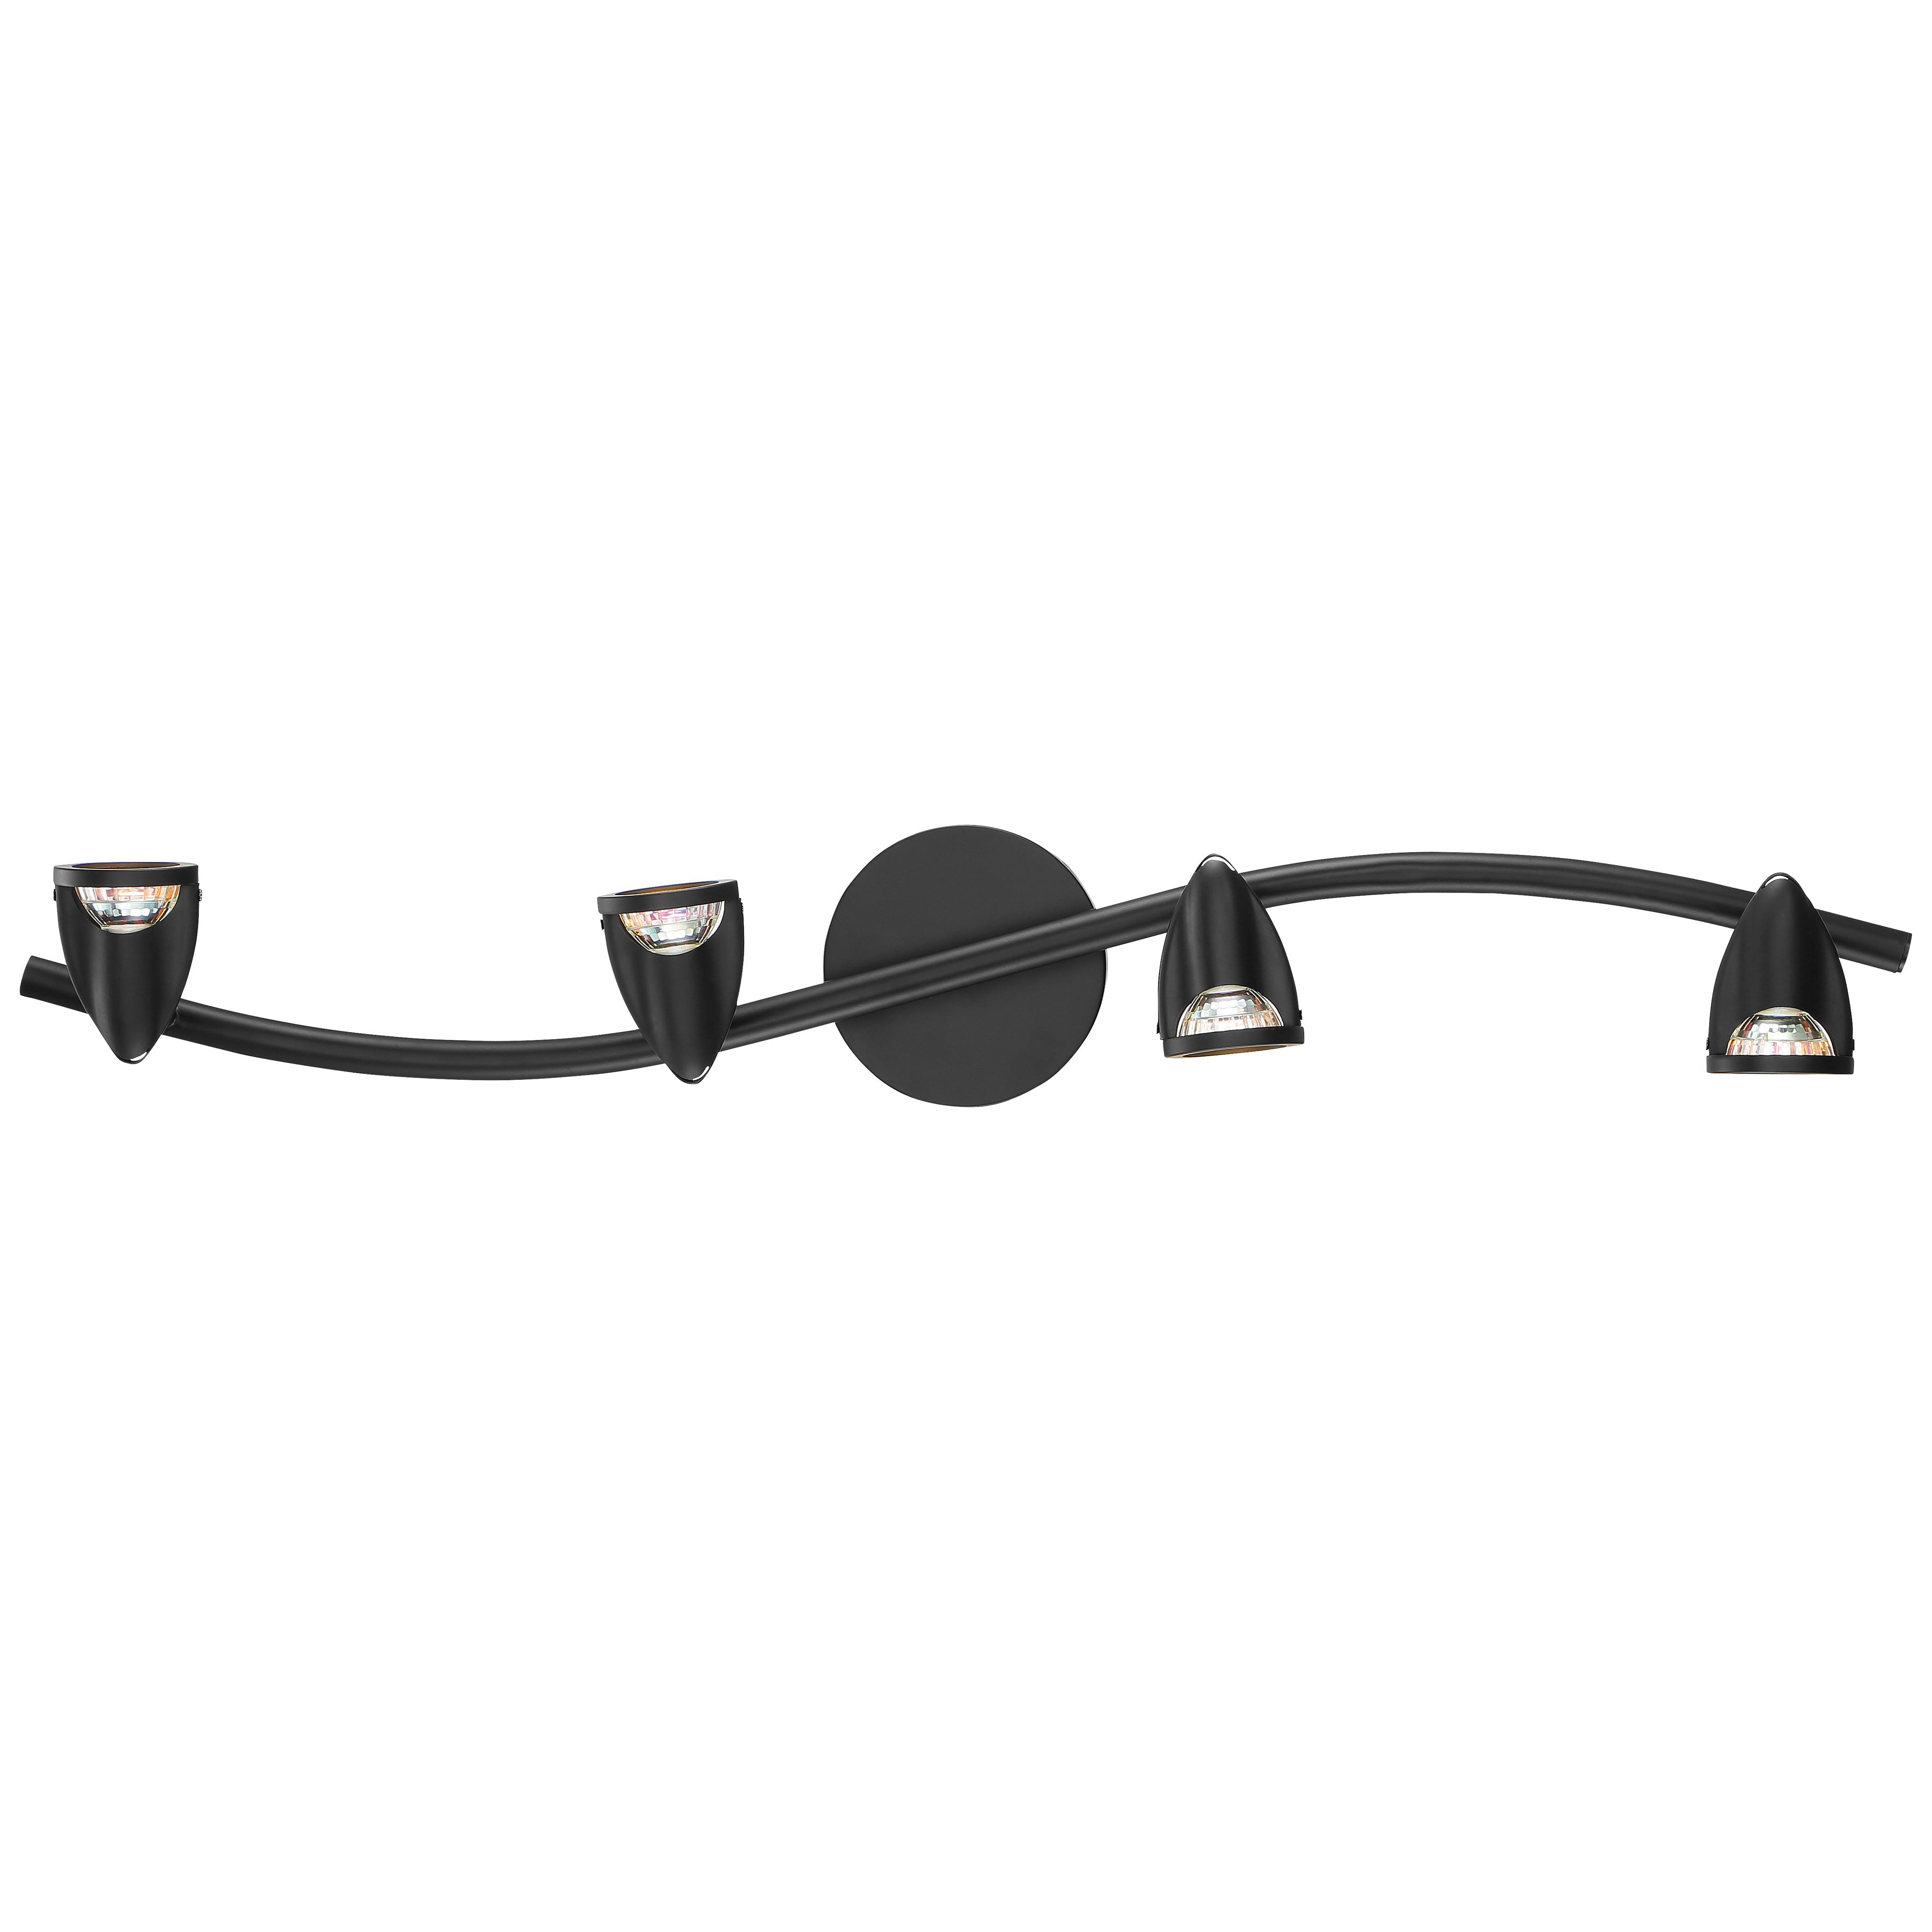 Phos Light Cobra 4 Light Adjustable LED Track Light Fixture, Black